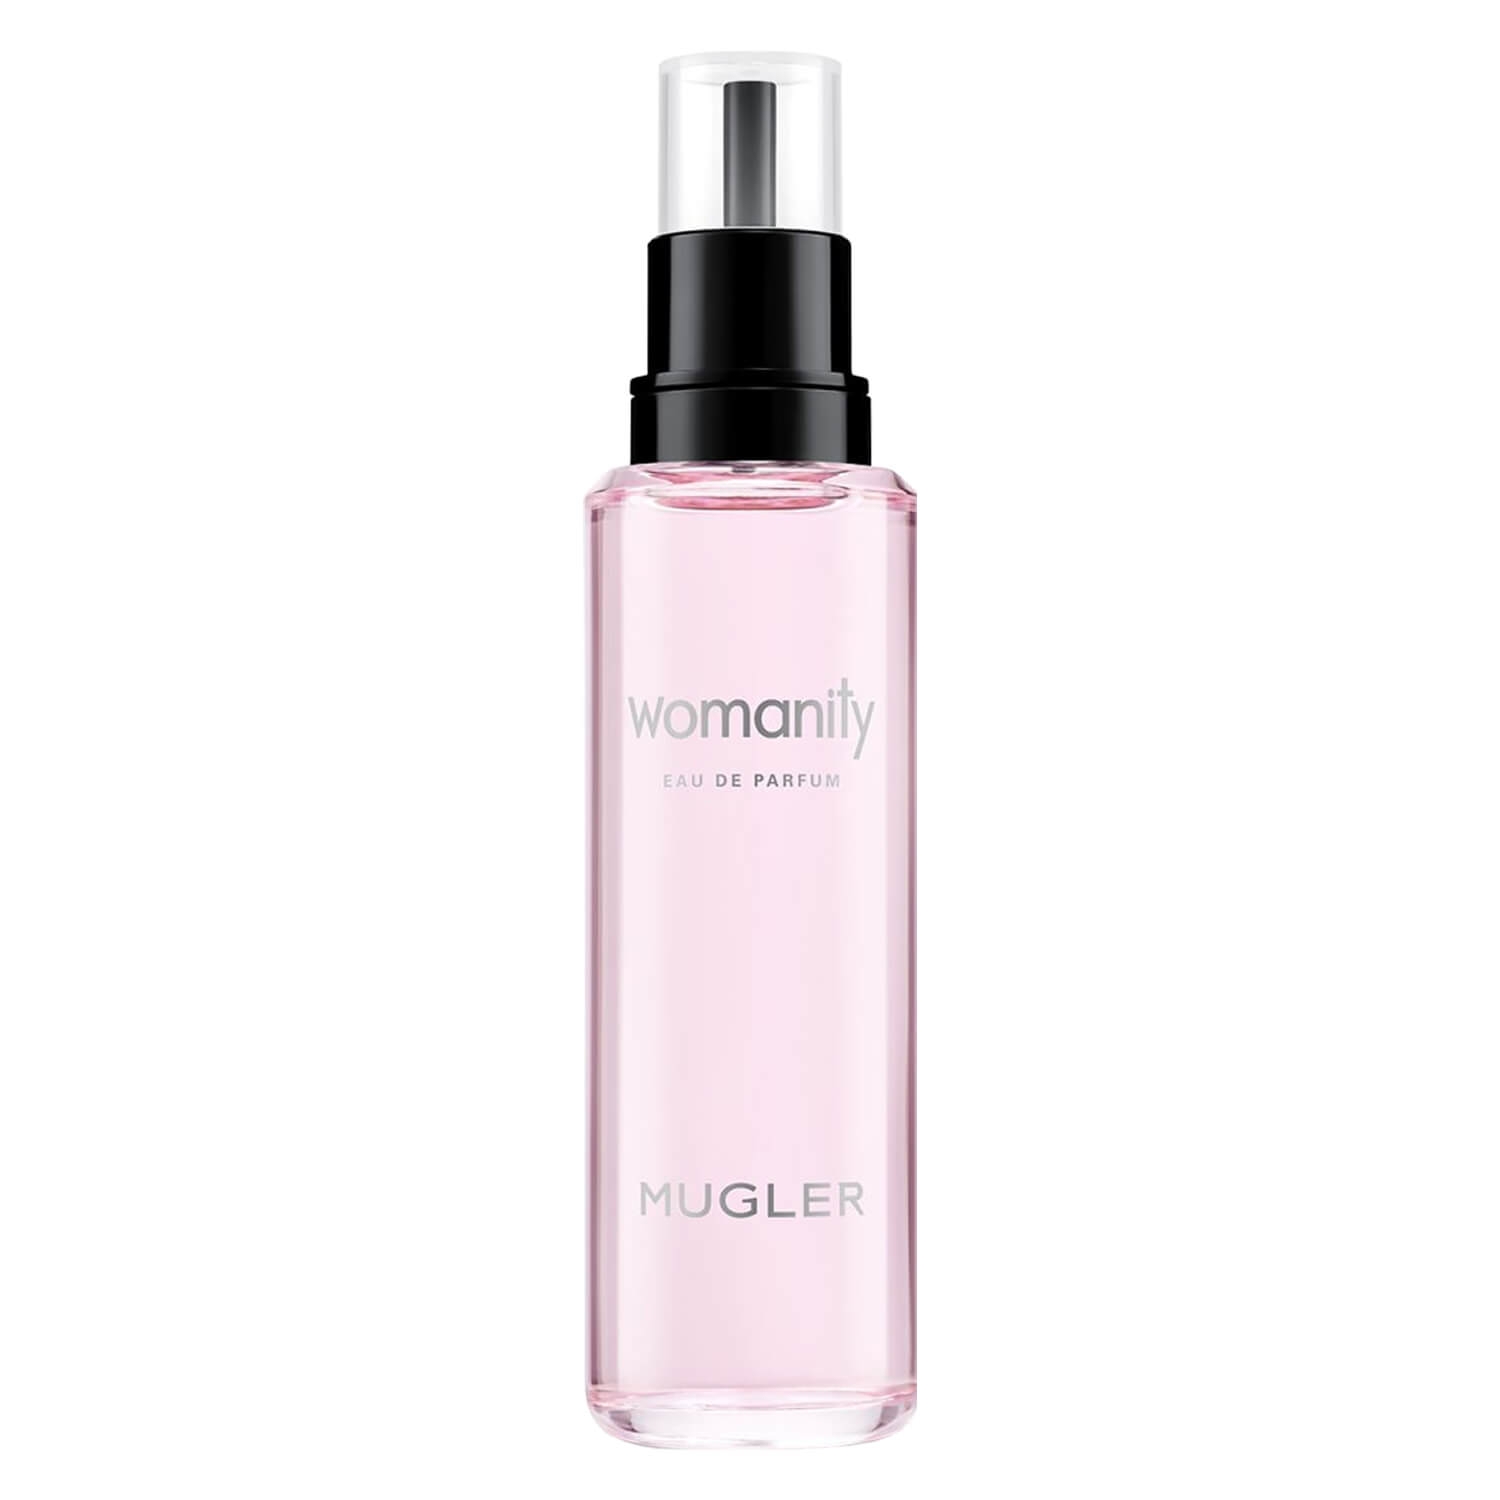 Produktbild von Womanity - Eau de Parfum Refill